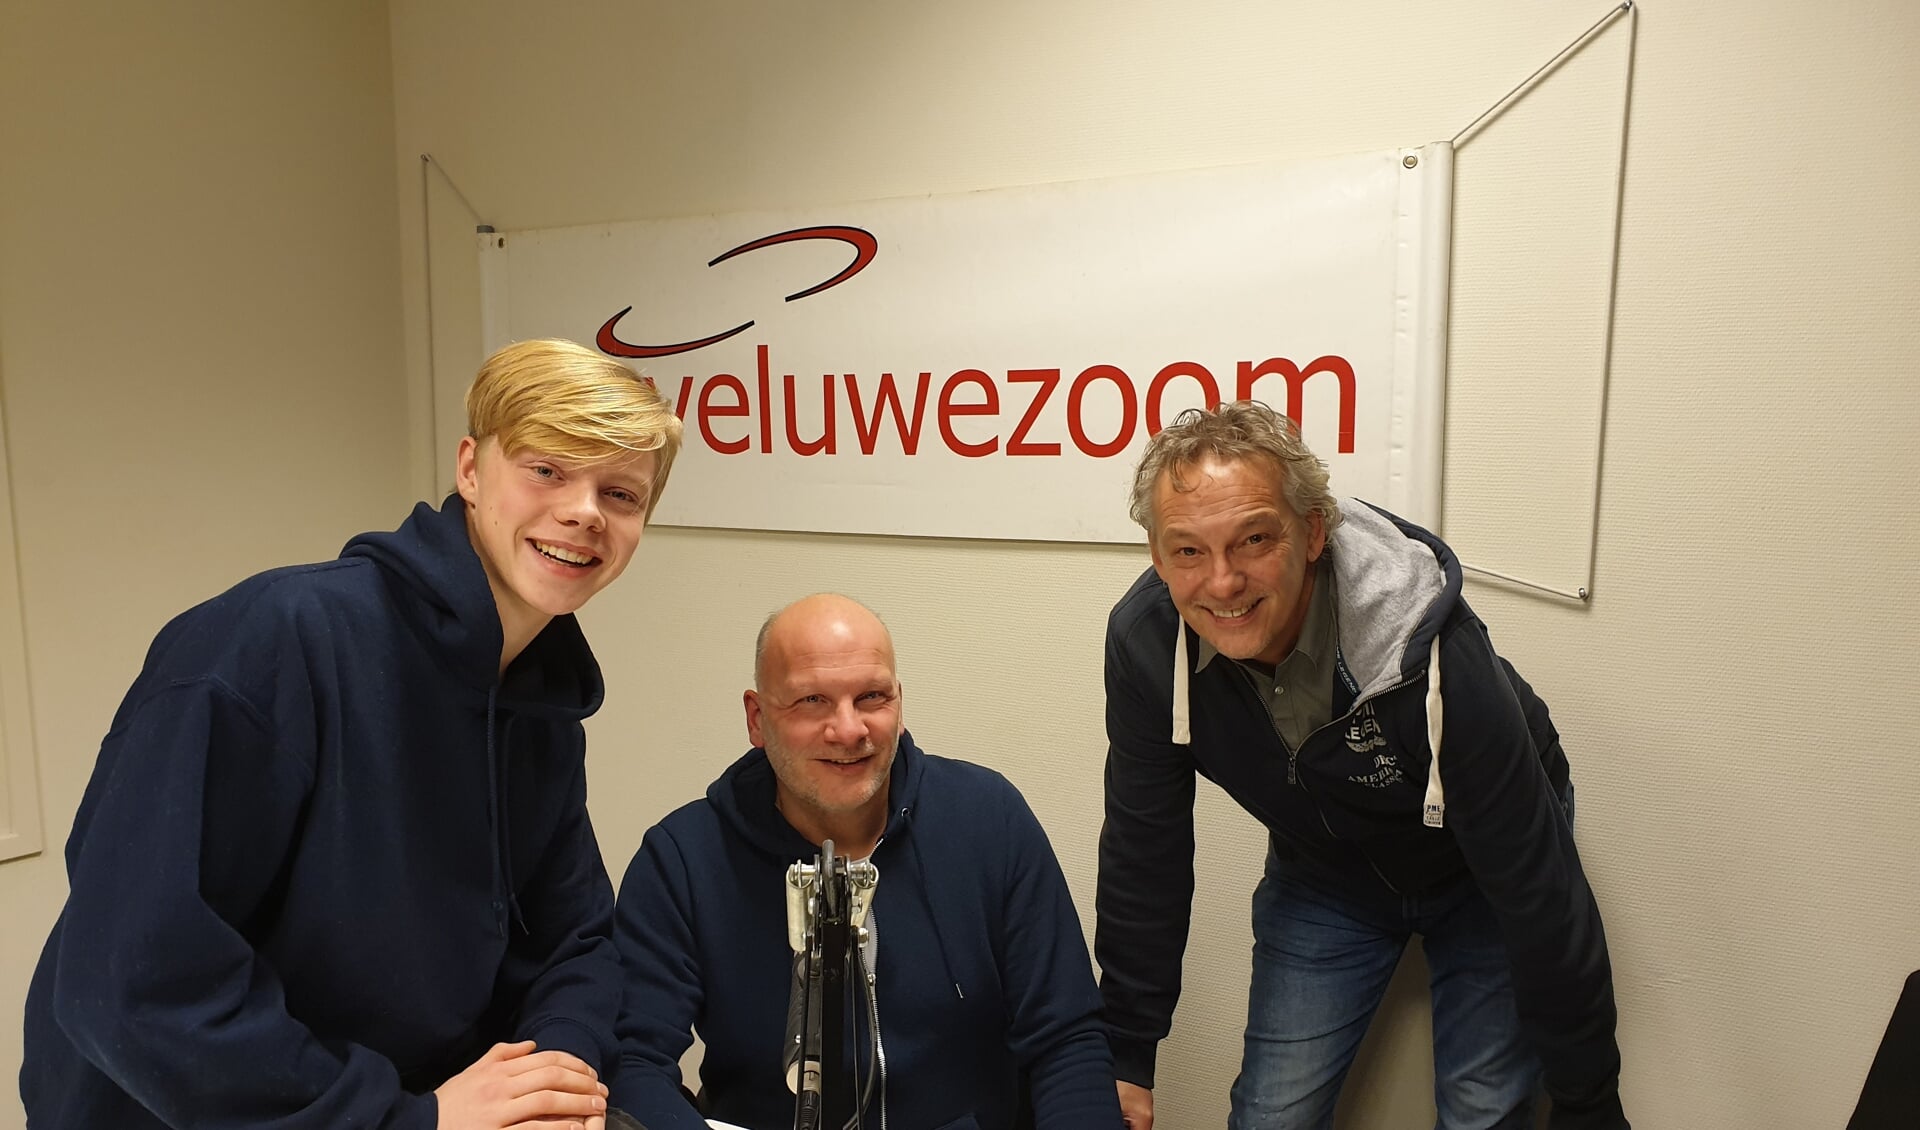 De 3 dj's van RTV Veluwezoom:
Thom Peters, zijn vader Harry en Steve van Hooydonk